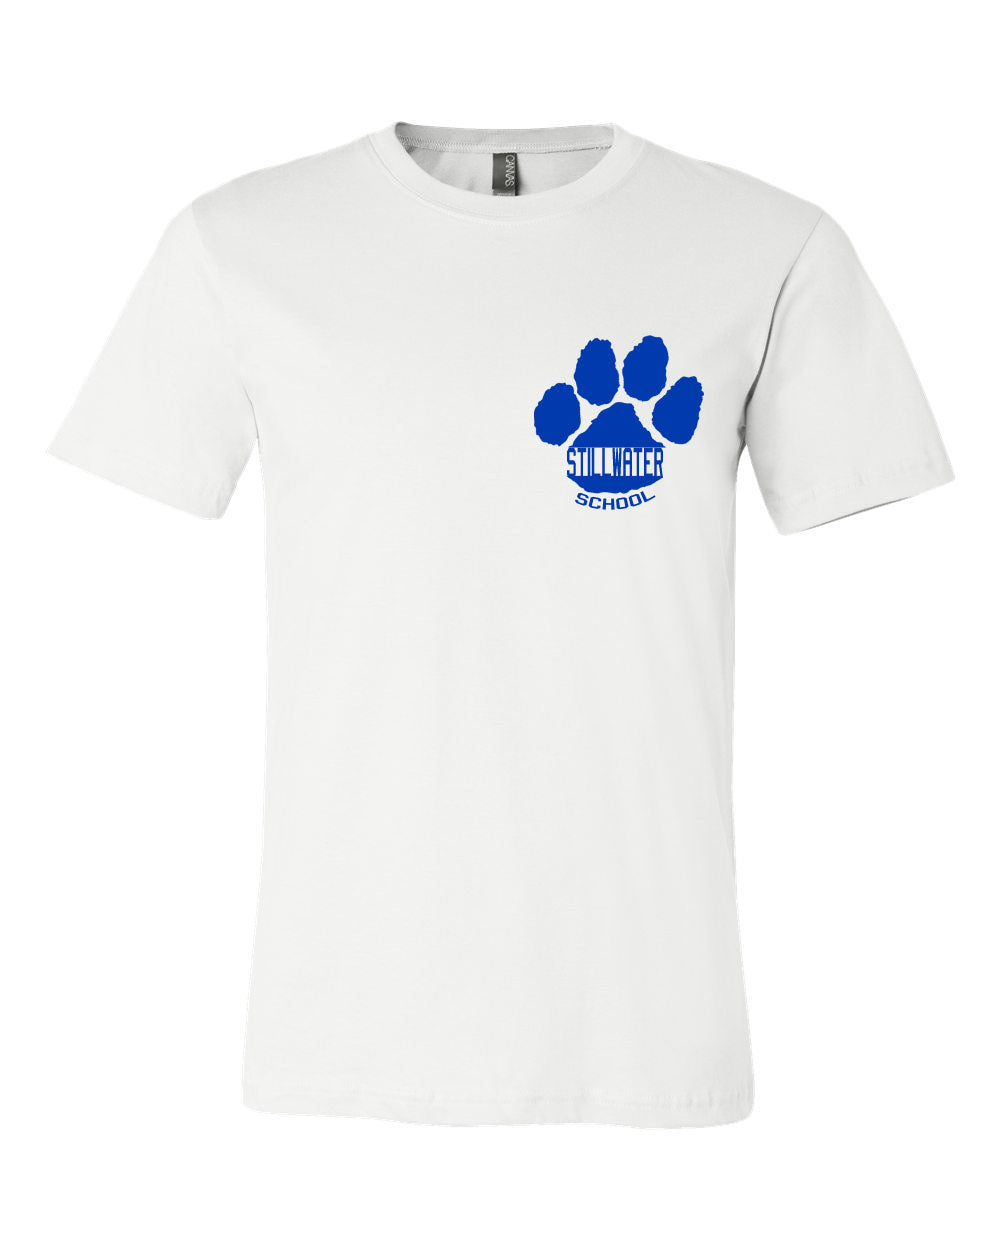 Stillwater design 2 T-Shirt